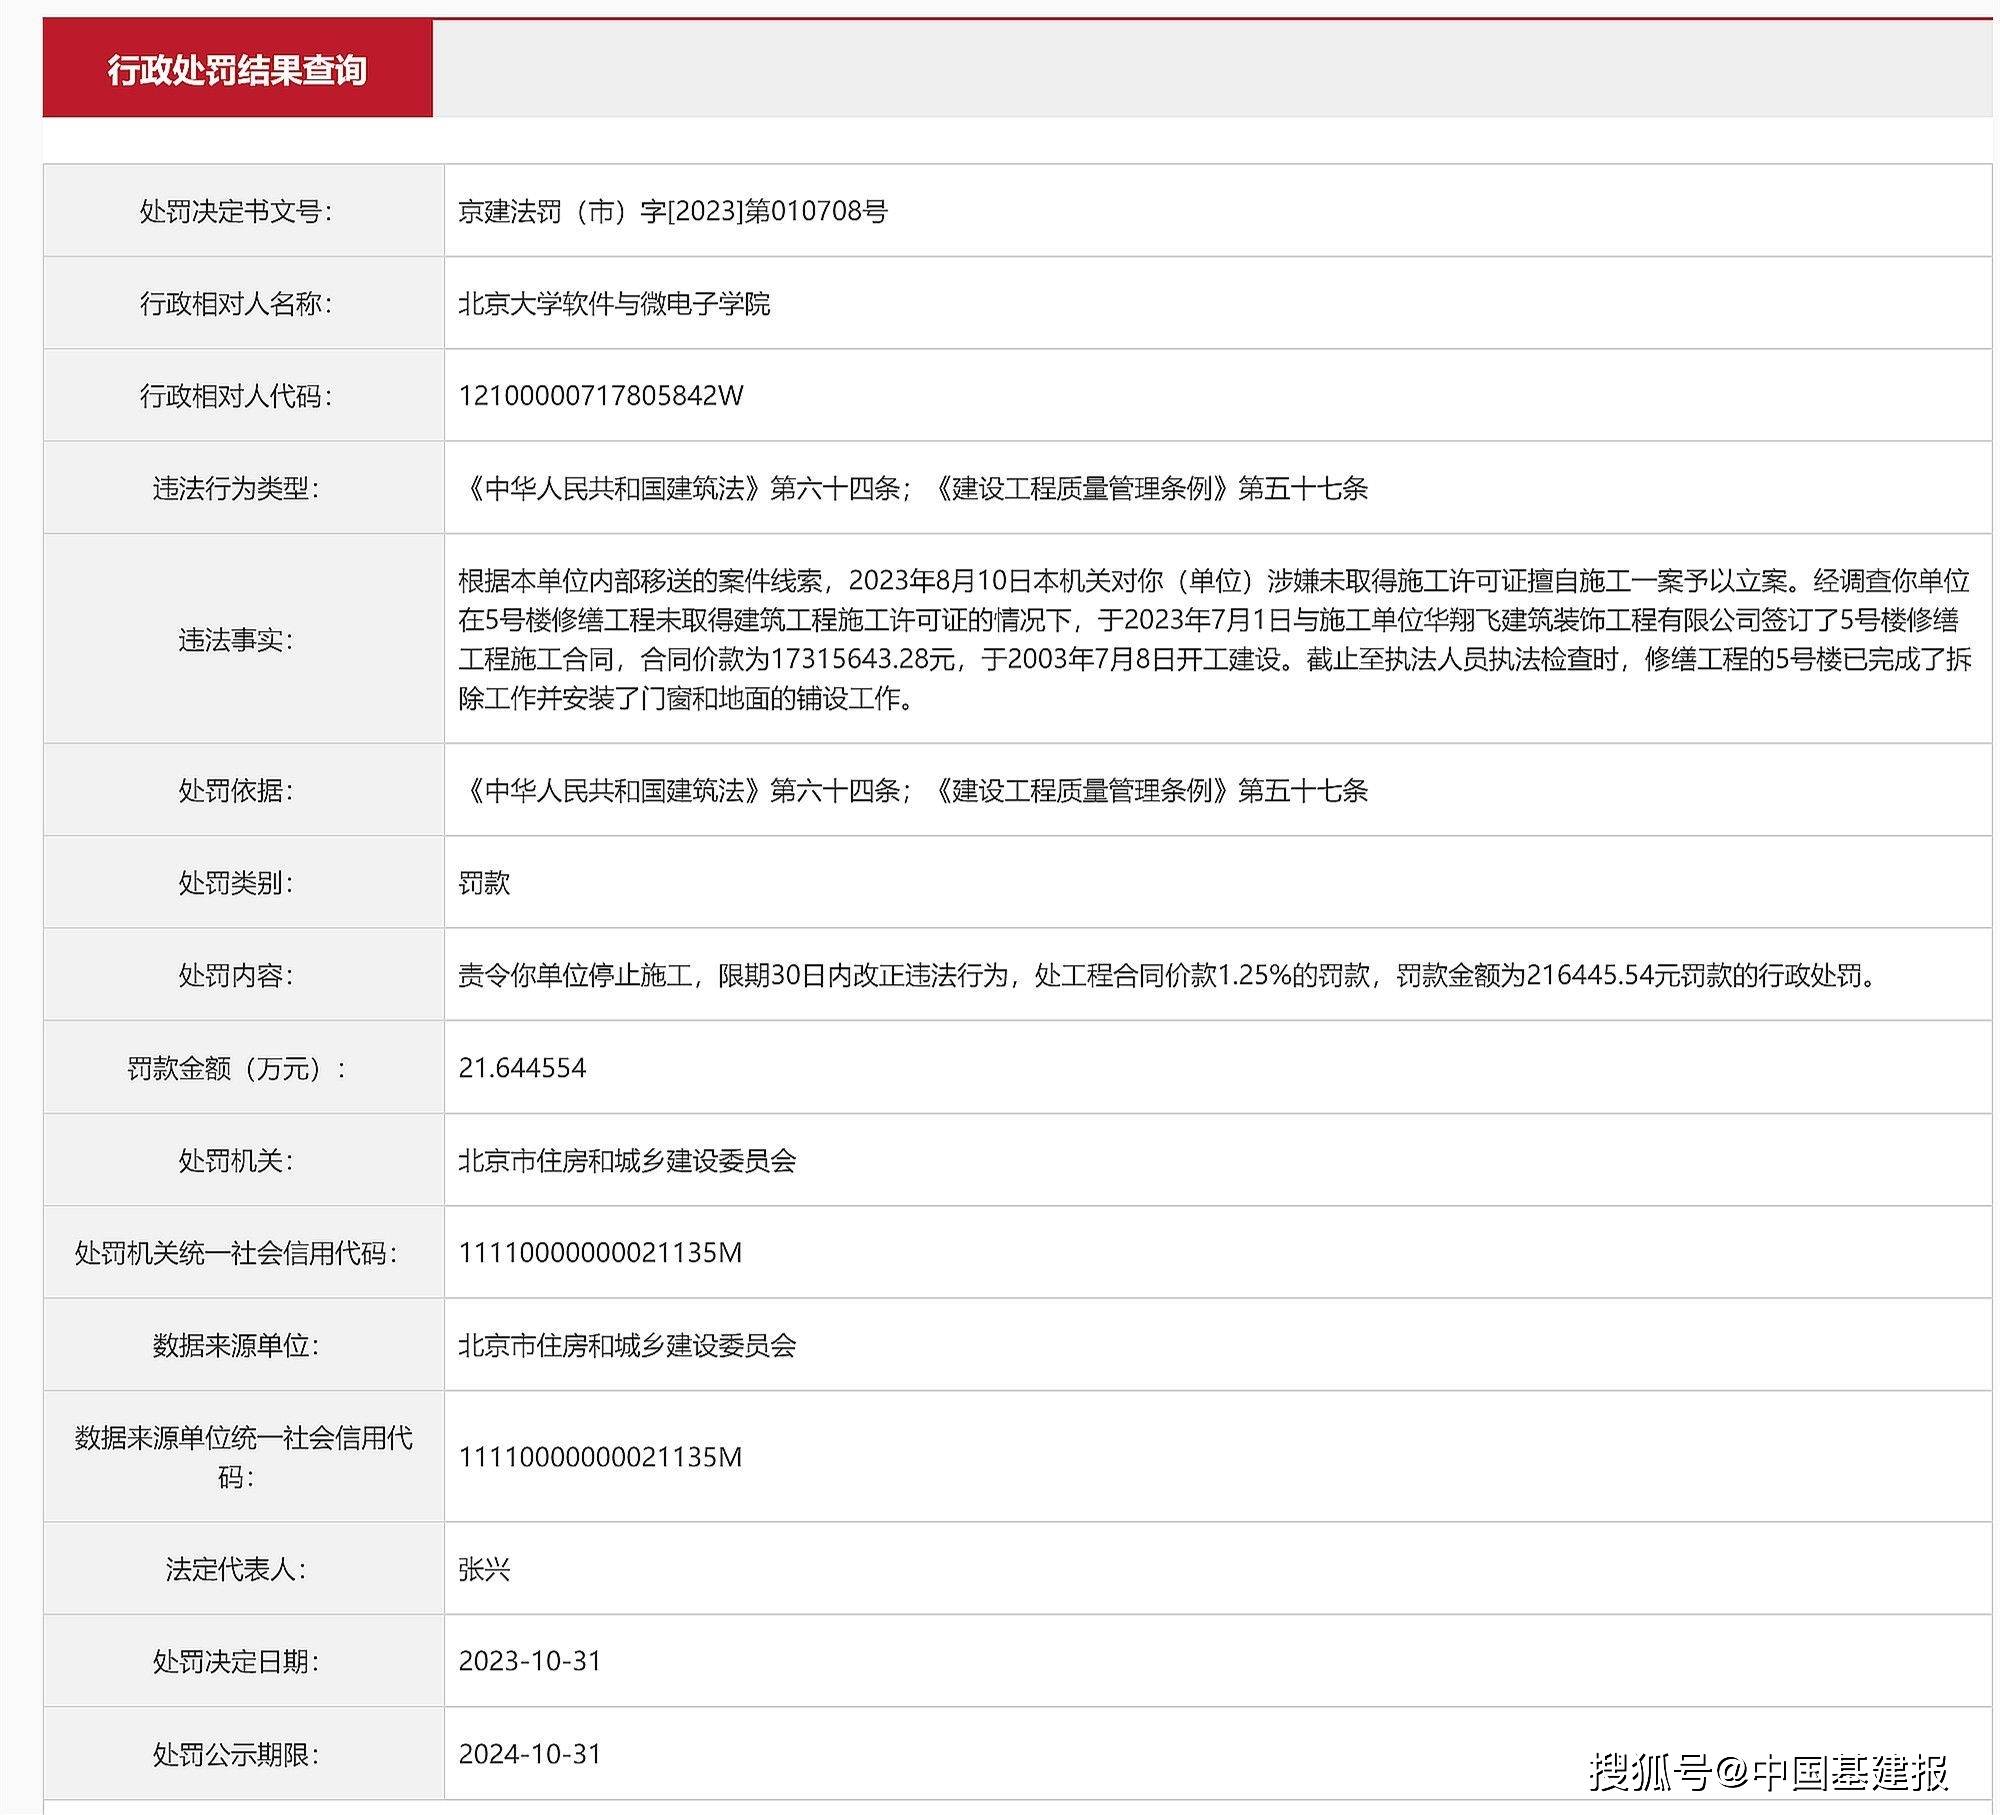 北京大学:未取得许可证擅自施工北京大学，北京大学软件与微电子学院被罚21万余元